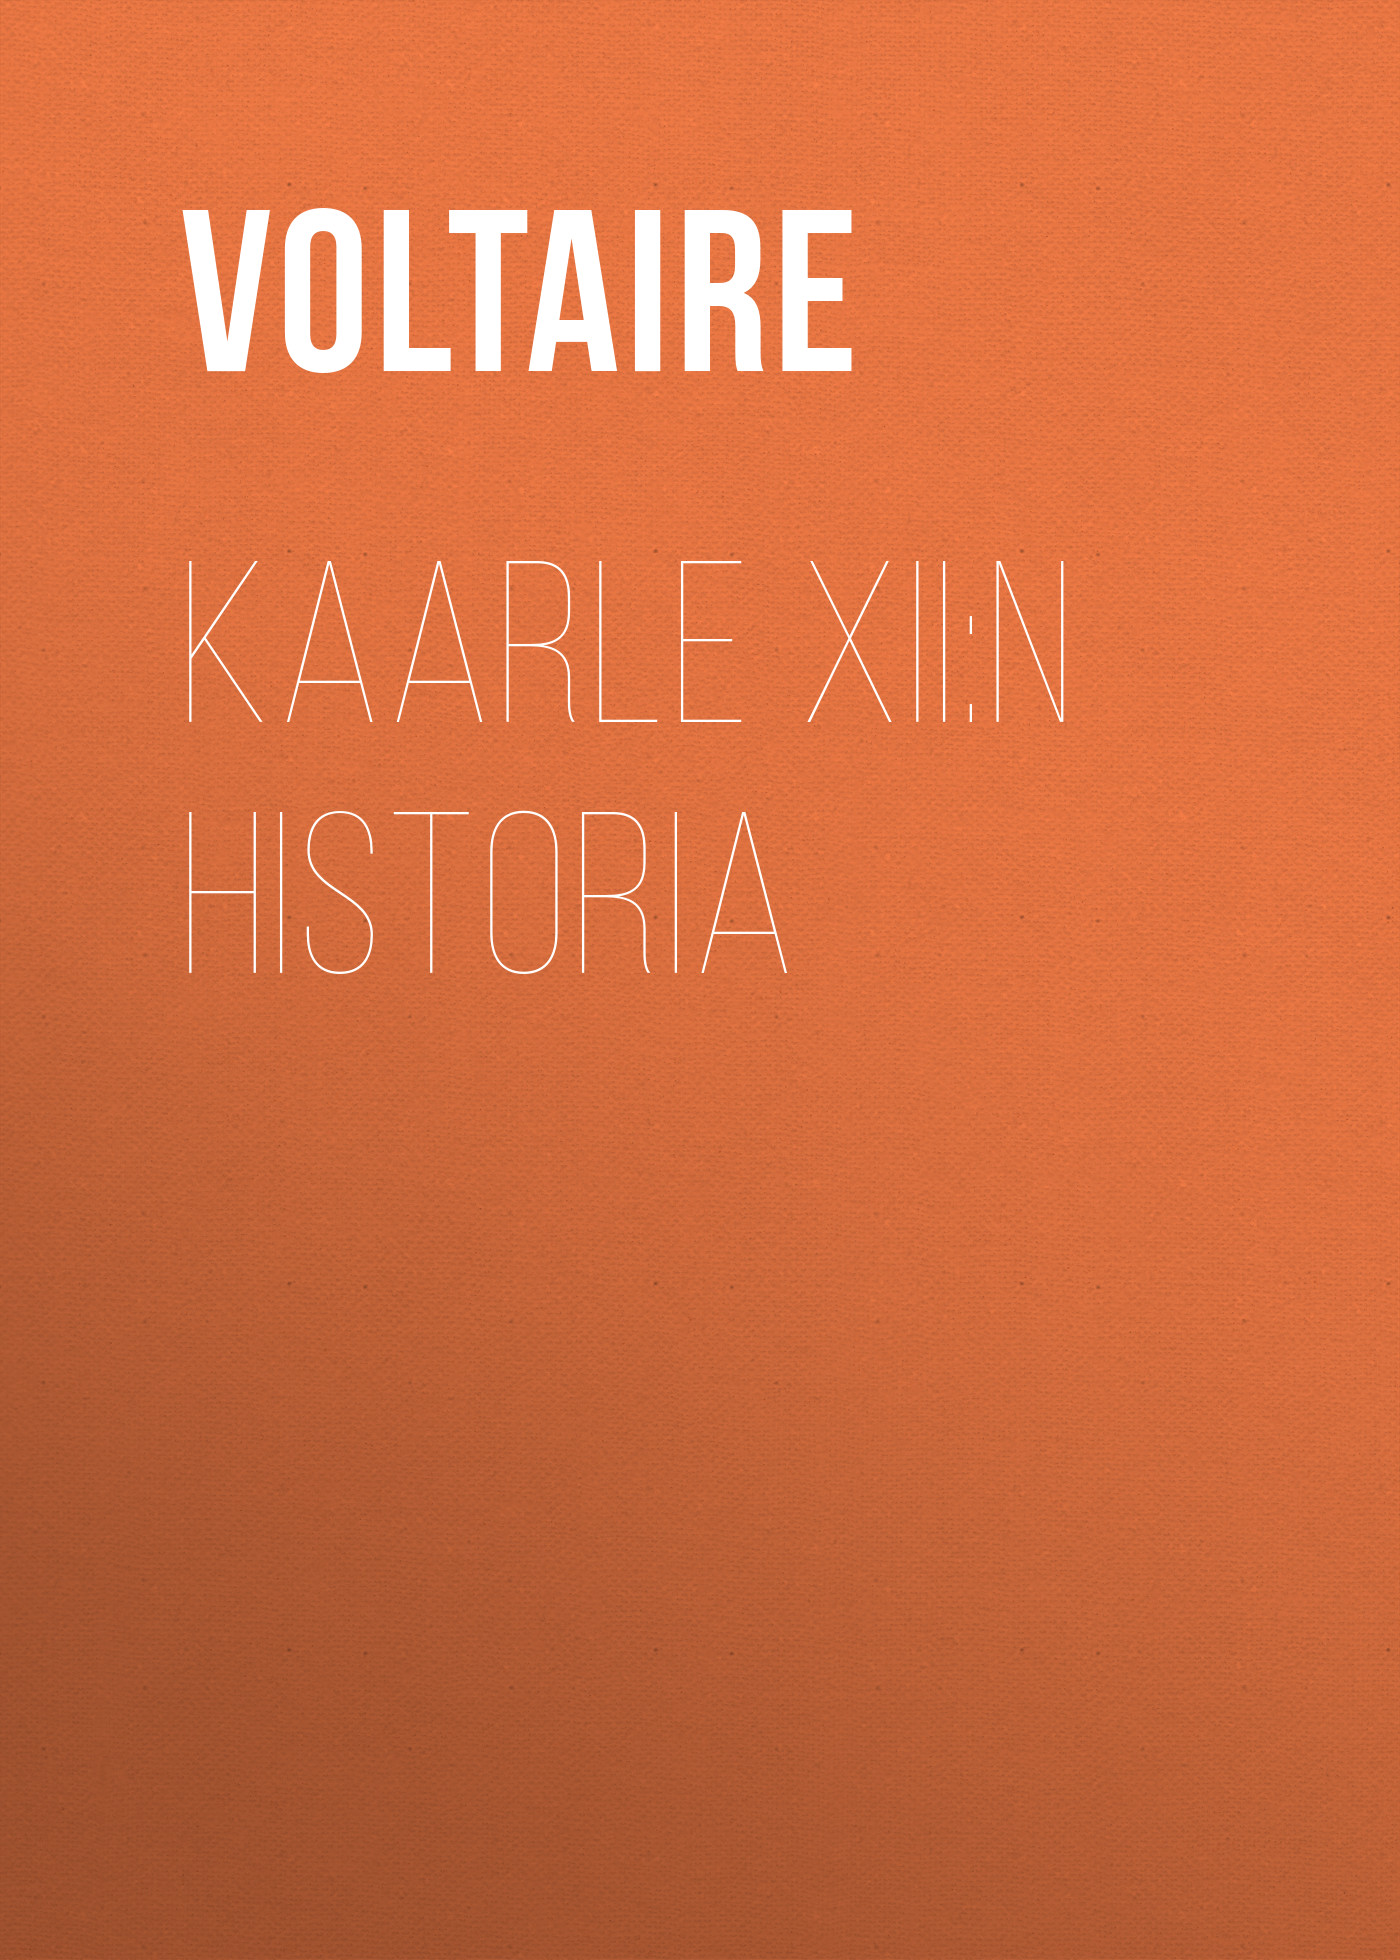 Книга Kaarle XII:n historia из серии , созданная  Voltaire, может относится к жанру История, Литература 18 века, Зарубежная классика, Биографии и Мемуары. Стоимость электронной книги Kaarle XII:n historia с идентификатором 25561076 составляет 0 руб.